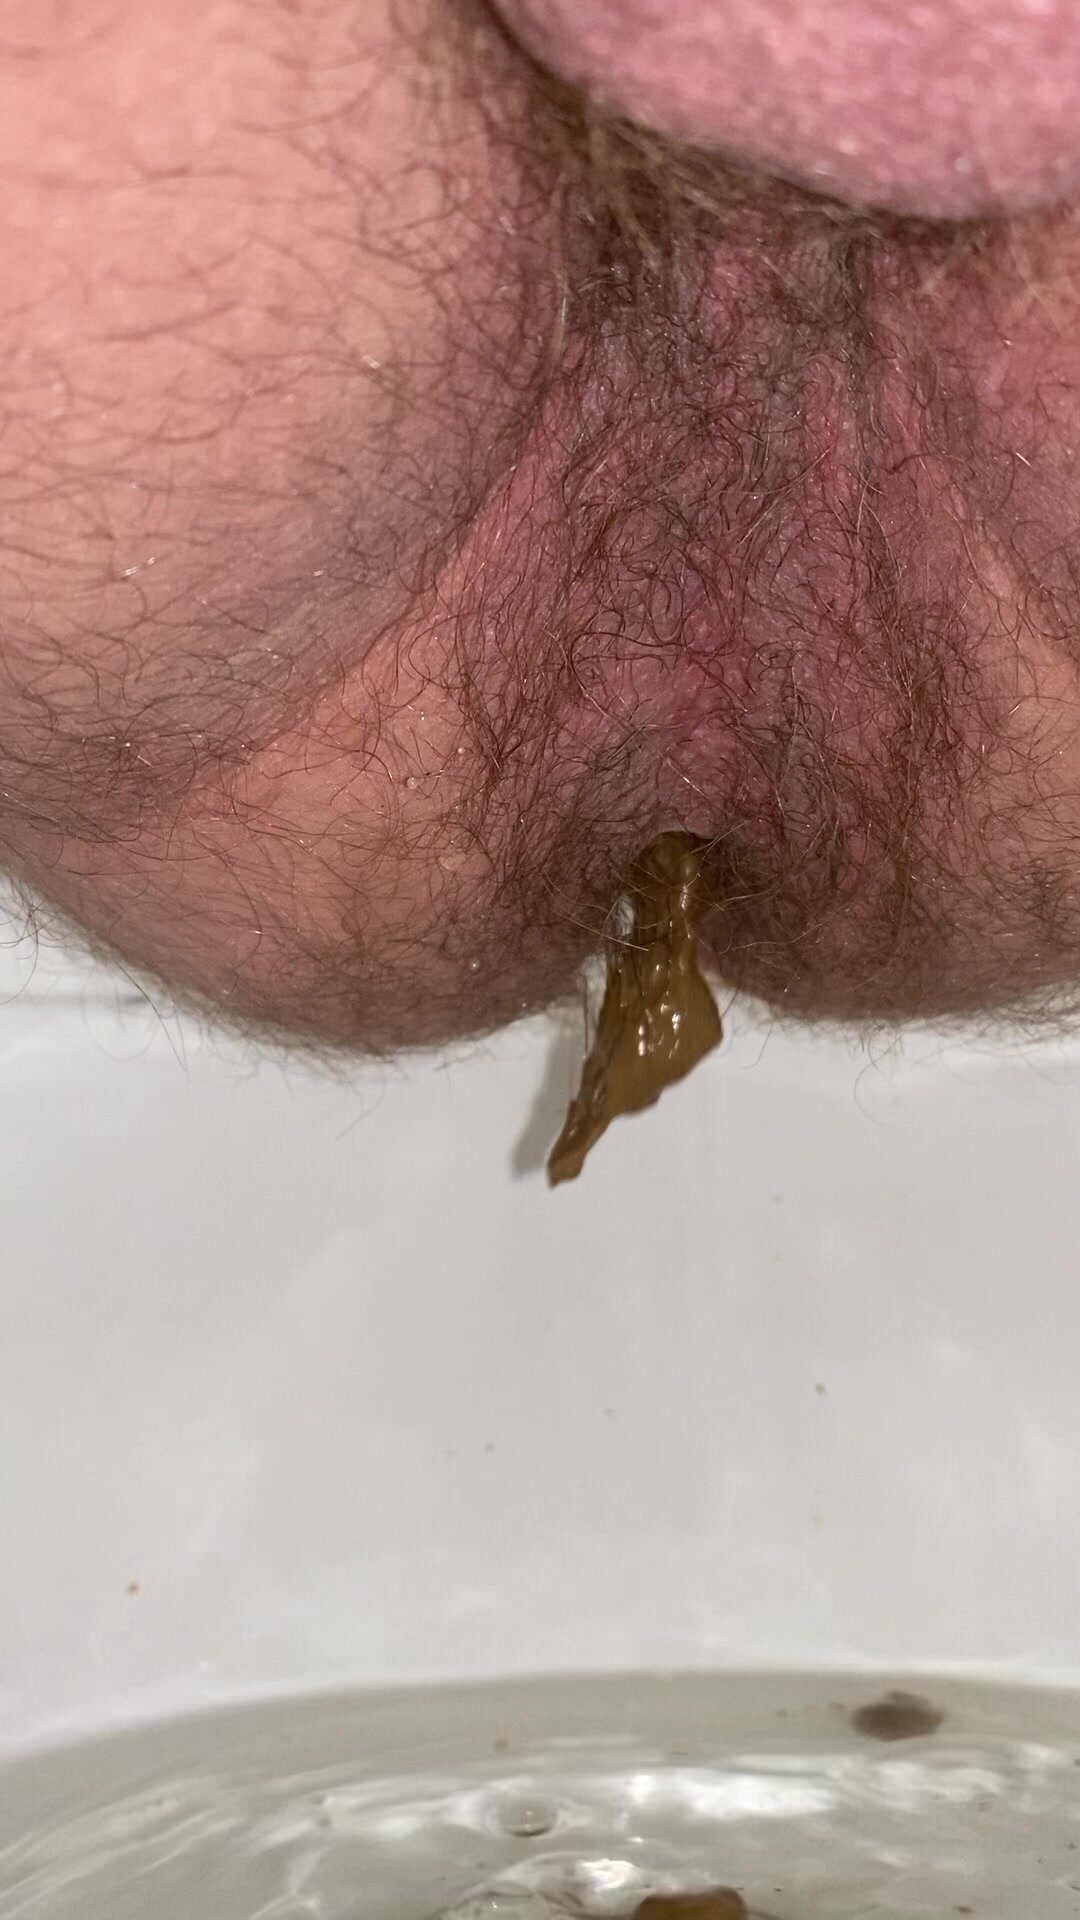 poop at work